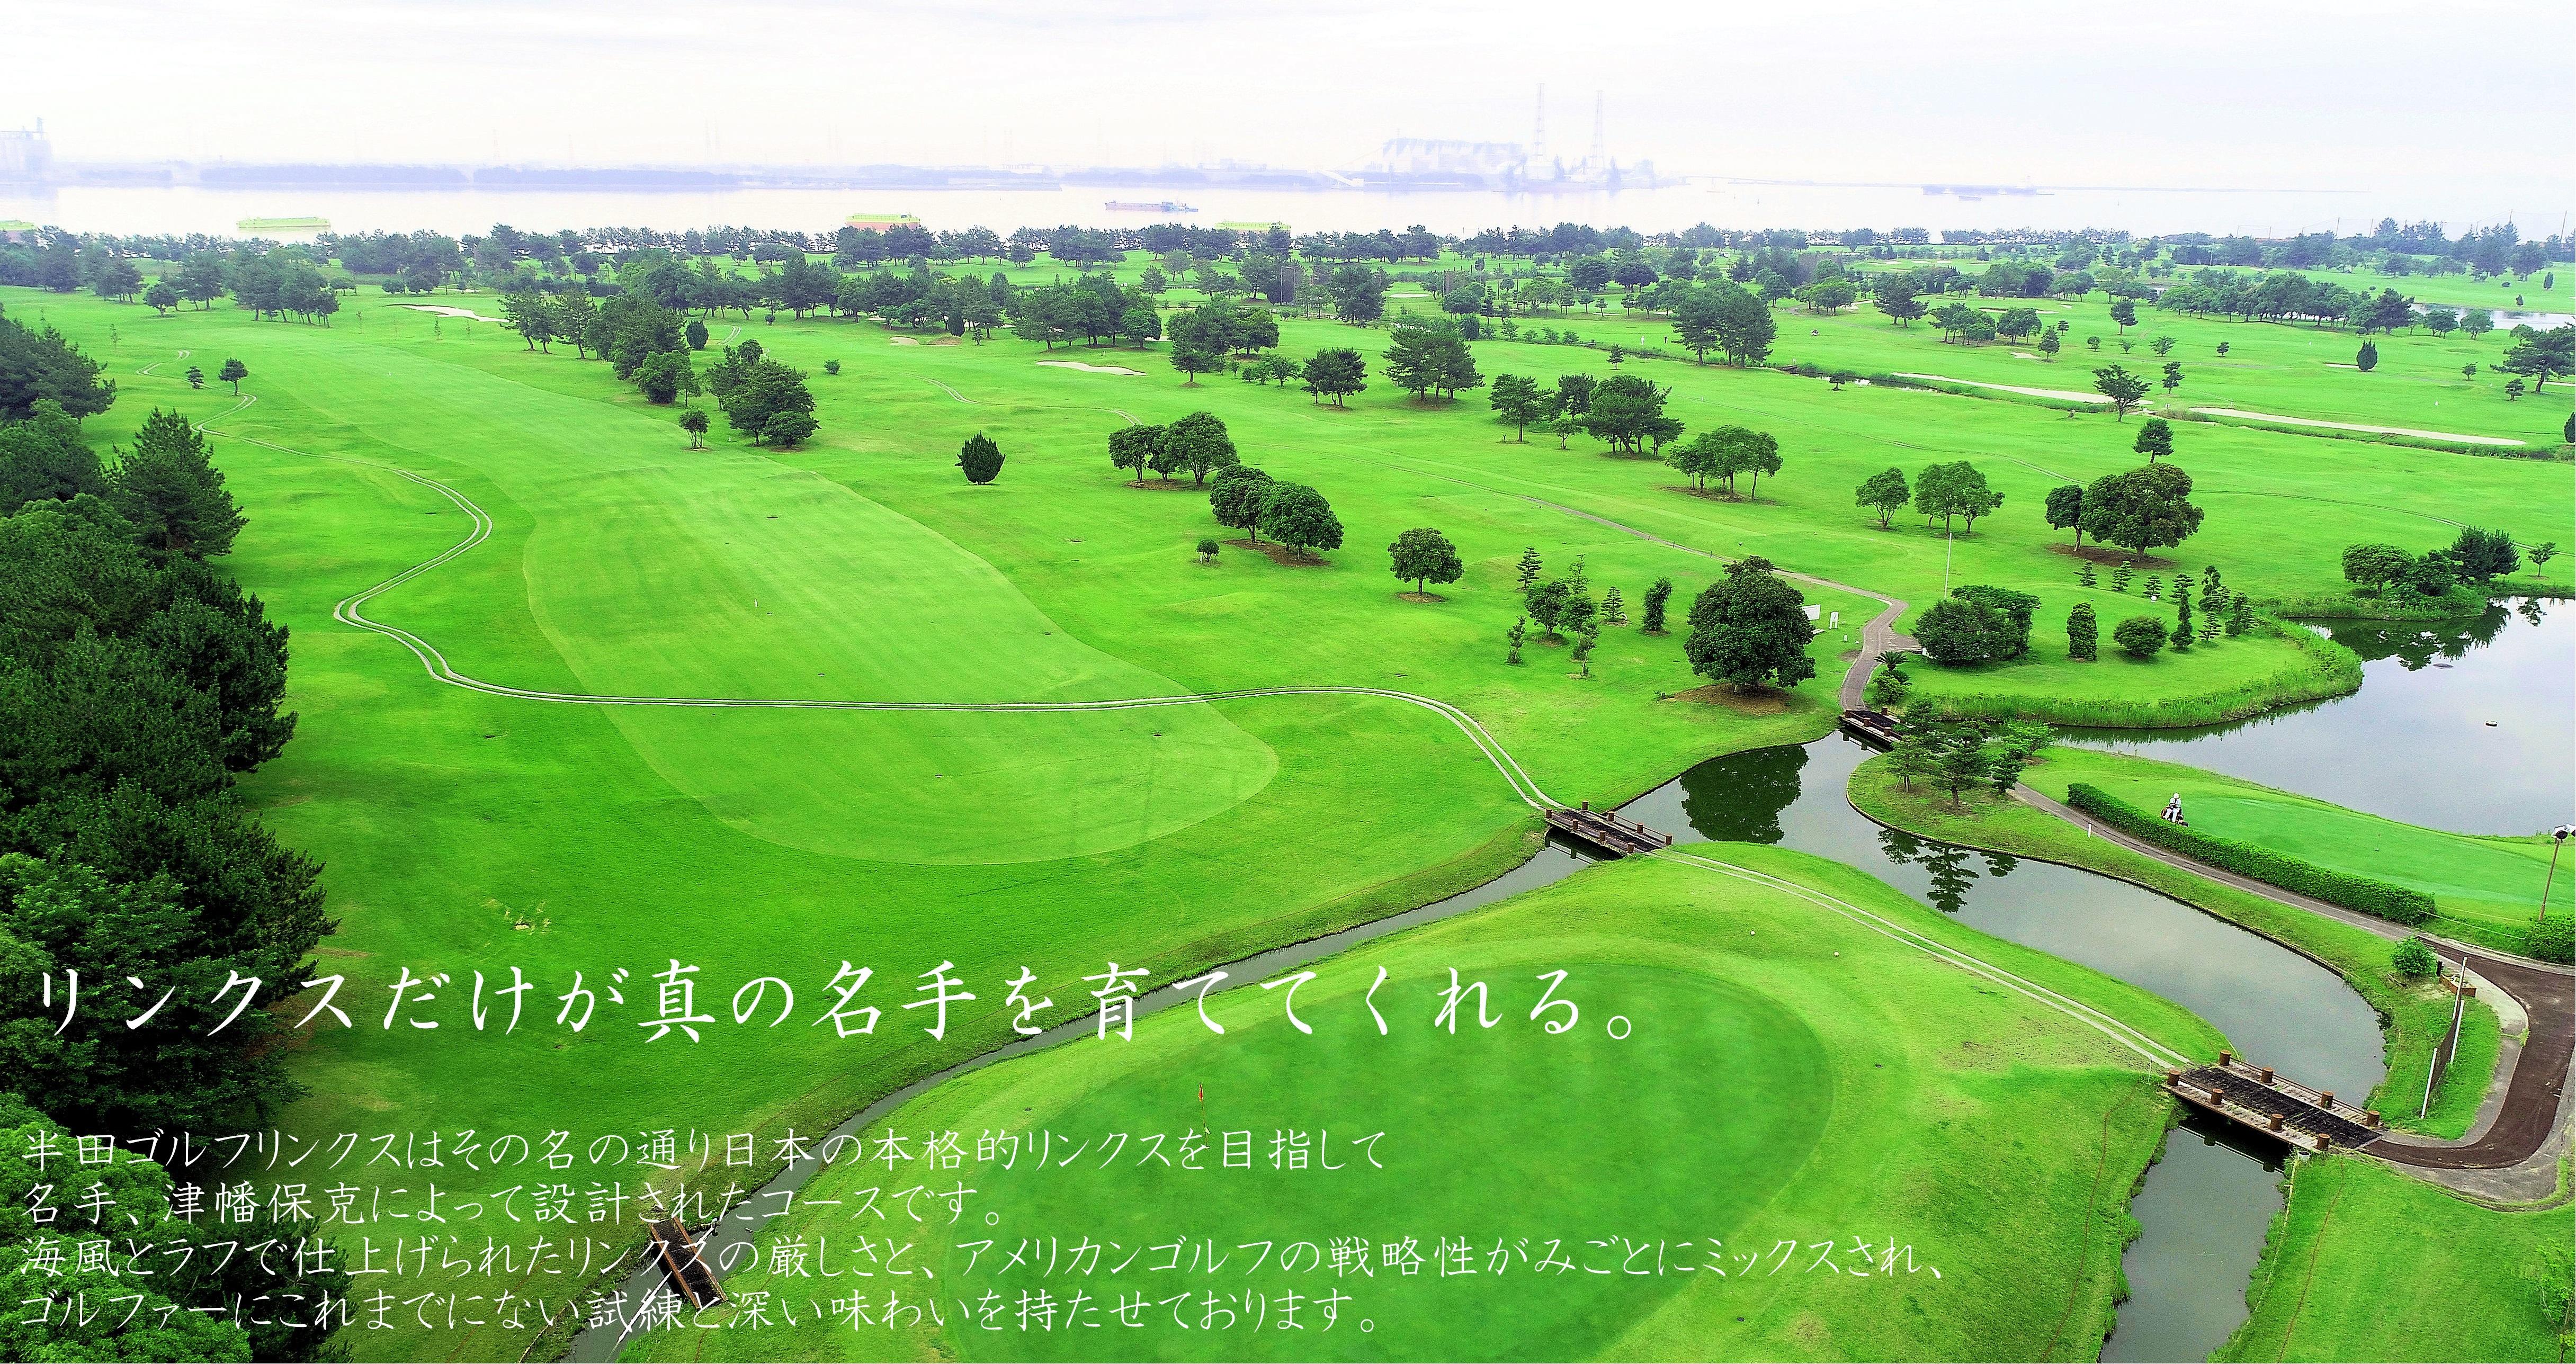 愛知県のゴルフ場 半田ゴルフリンクス オフィシャルサイト トップページ